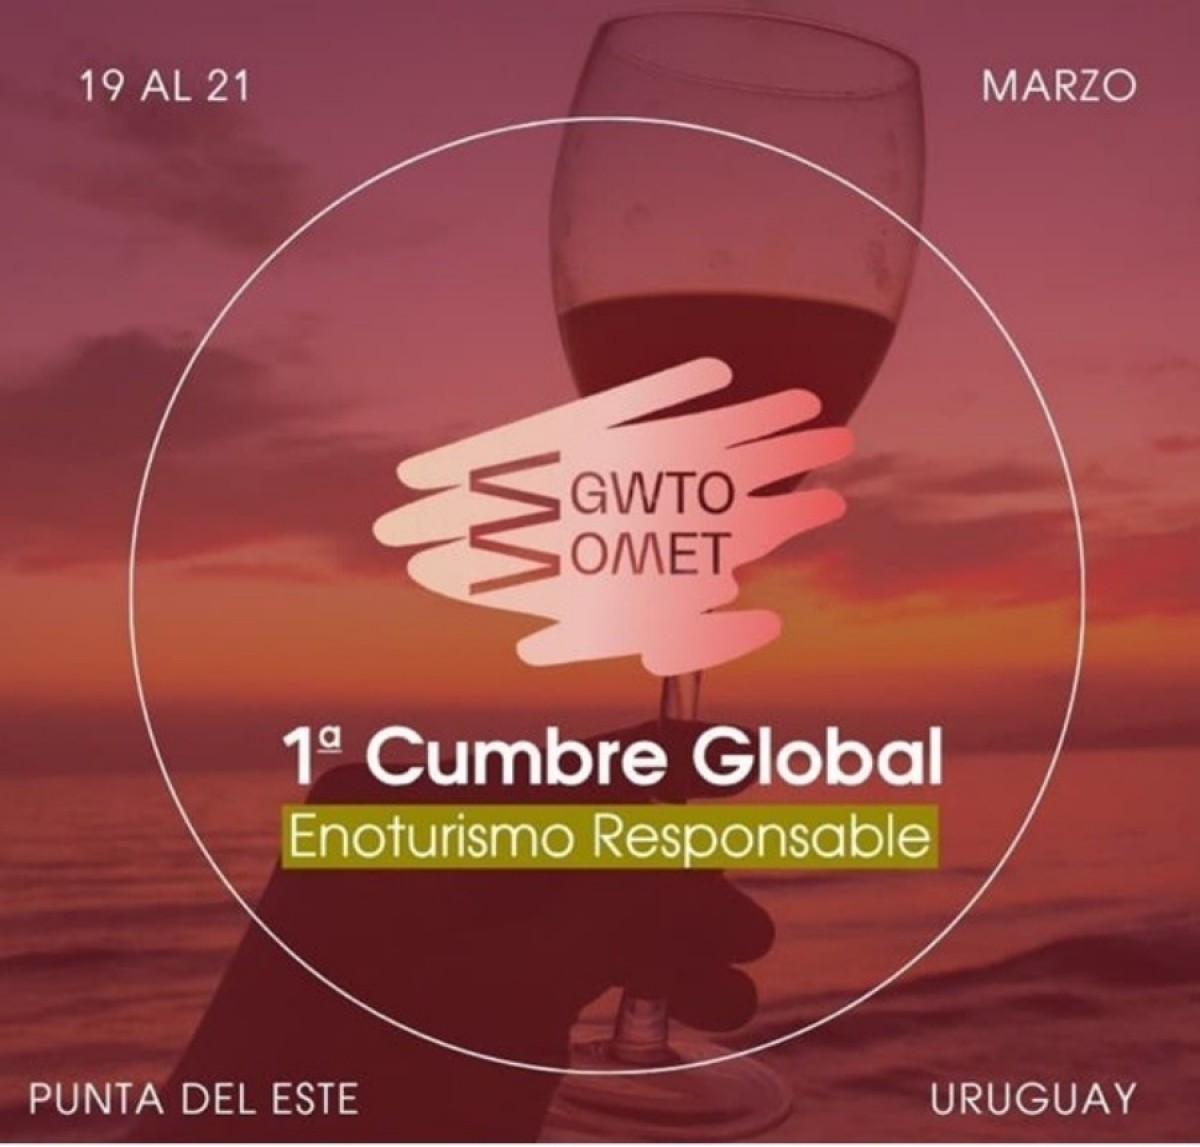 Uruguay recibe a la primera Cumbre Global de Enoturismo Responsable